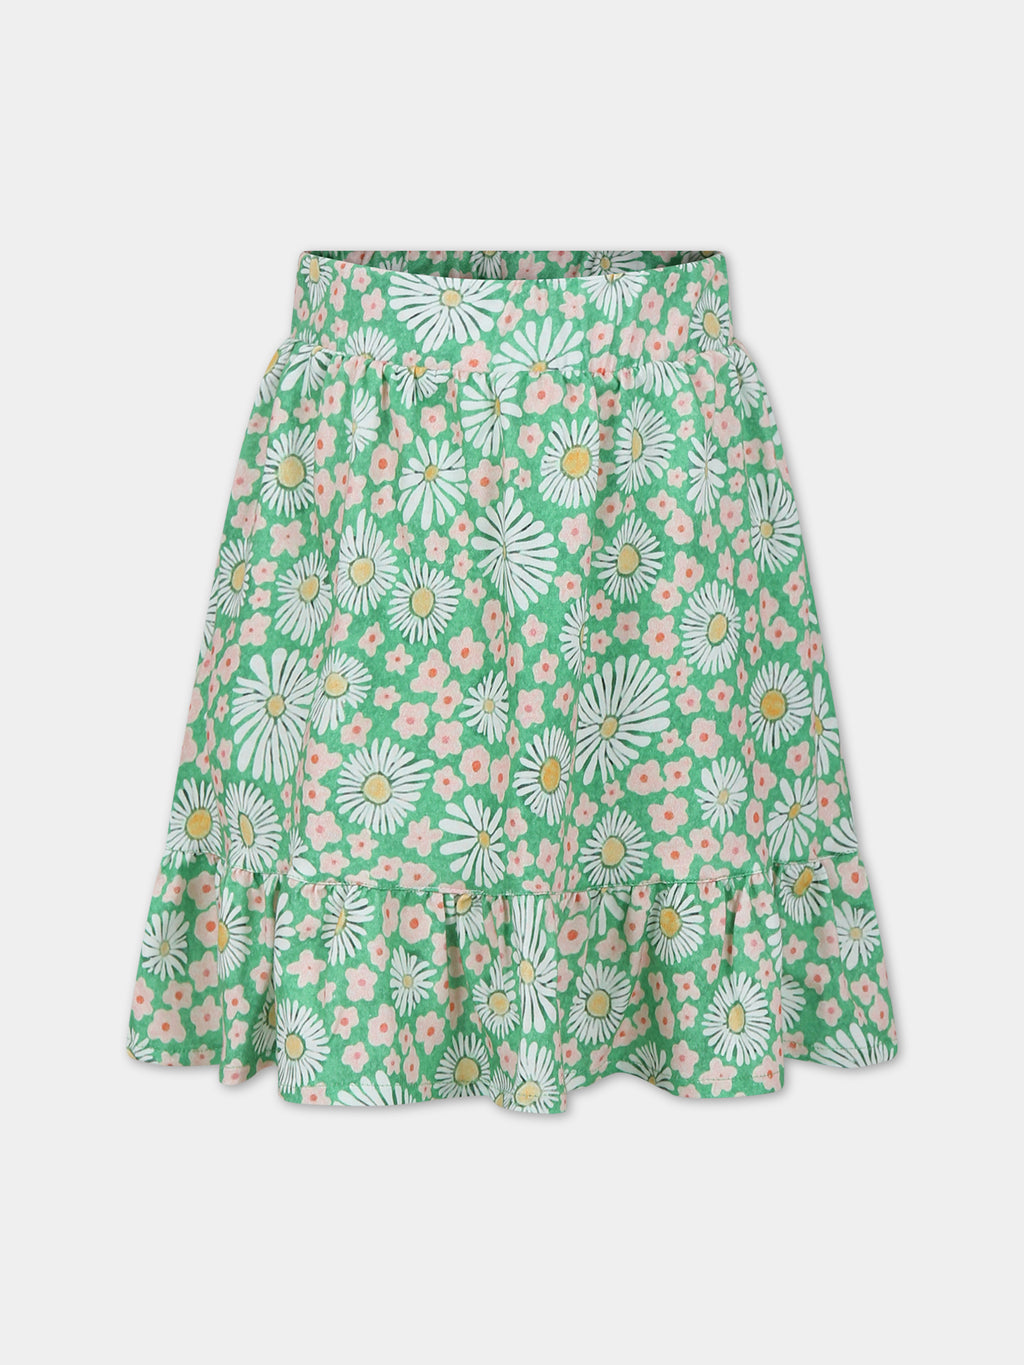 Green patterned skirt for girl